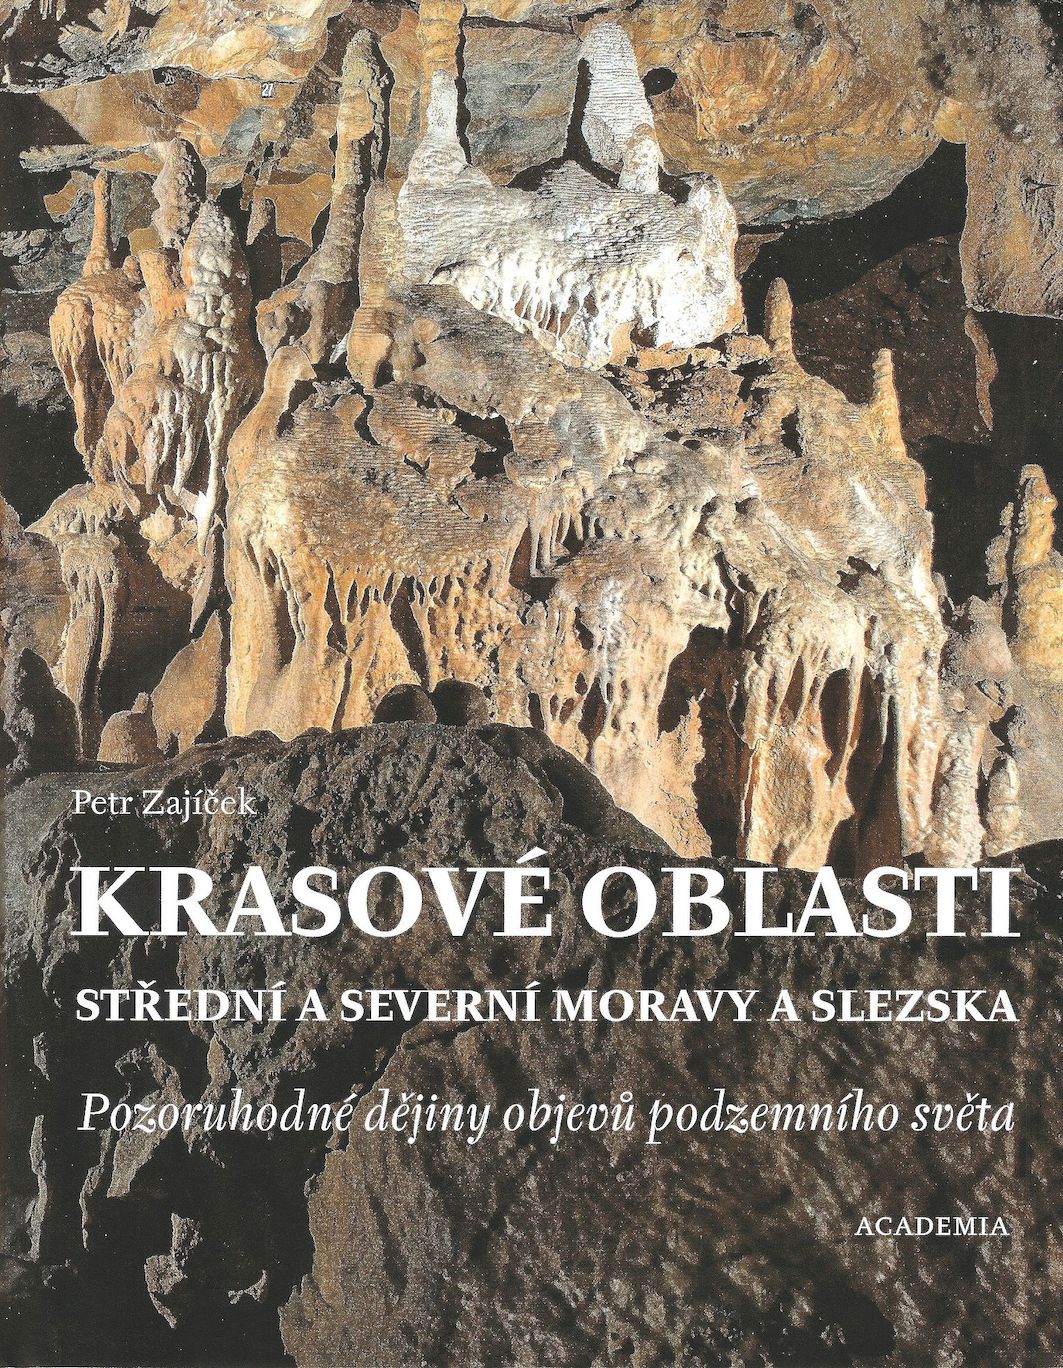 Krasové oblasti střední a severní Moravy a Slezska: pozoruhodné dějiny objevů podzemního světa